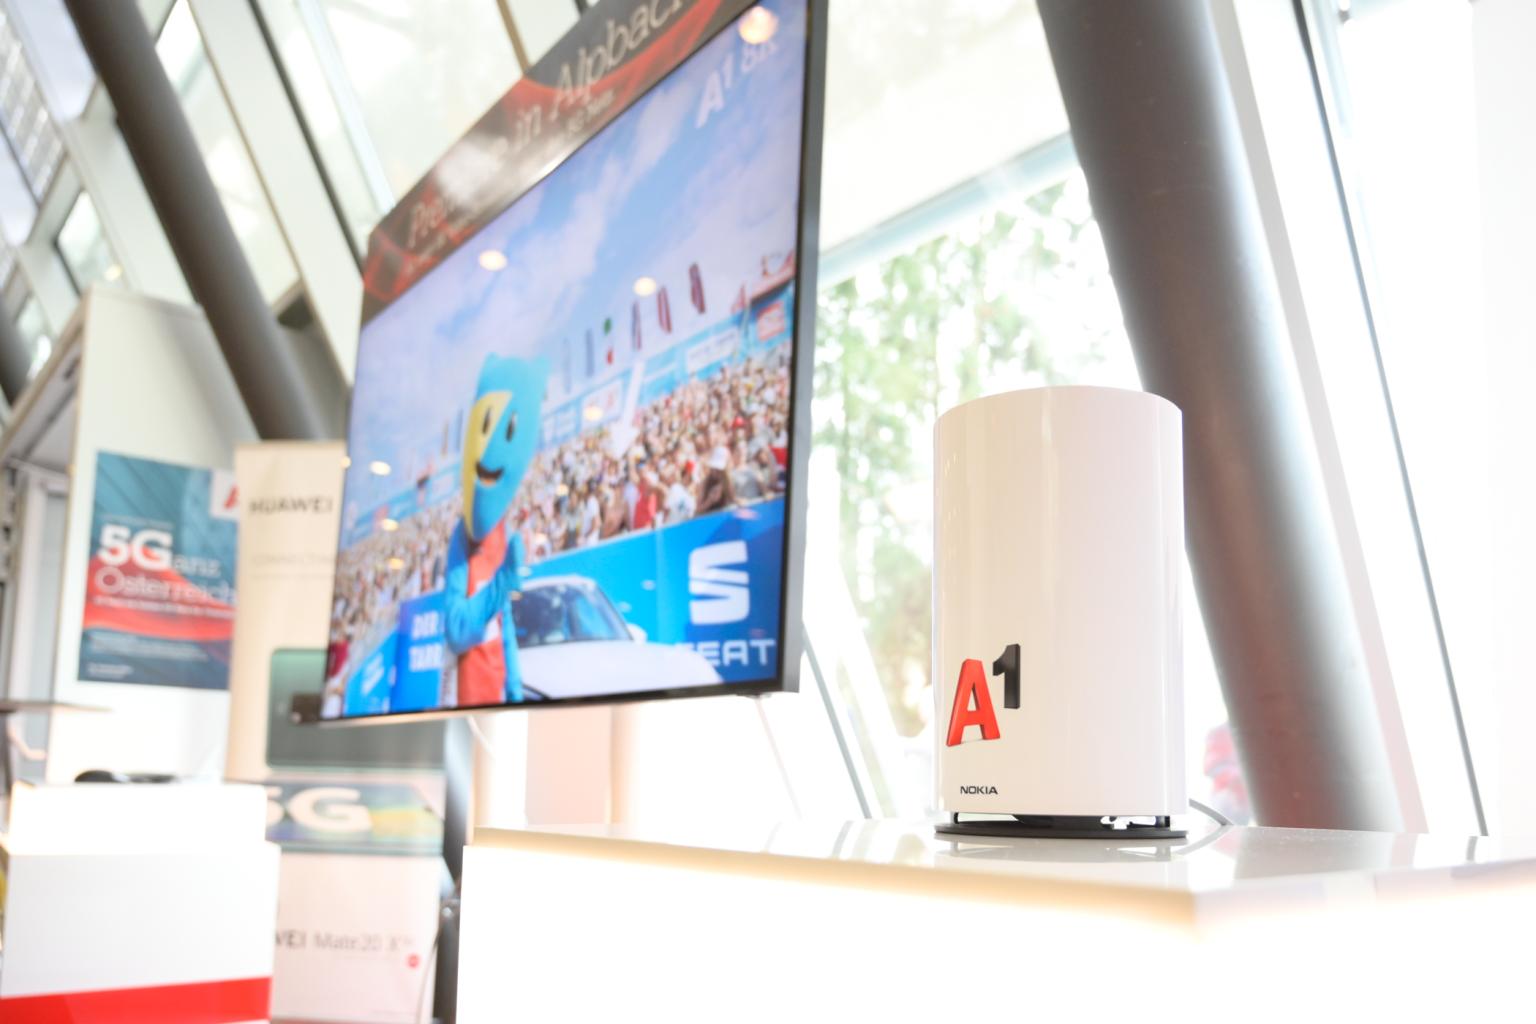 А1 Австрия представи 8К предаване на видео съдържание чрез 5G мрежа